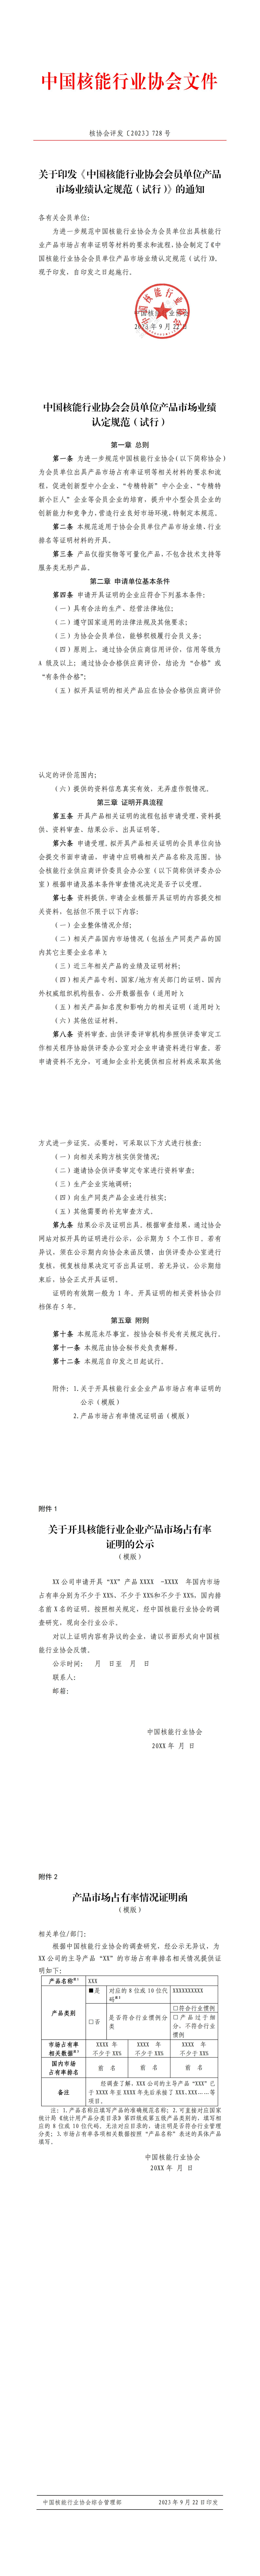 关于印发《中国核能行业协会会员单位产品市场业绩认定规范（试行）》的通知_00(1).jpg